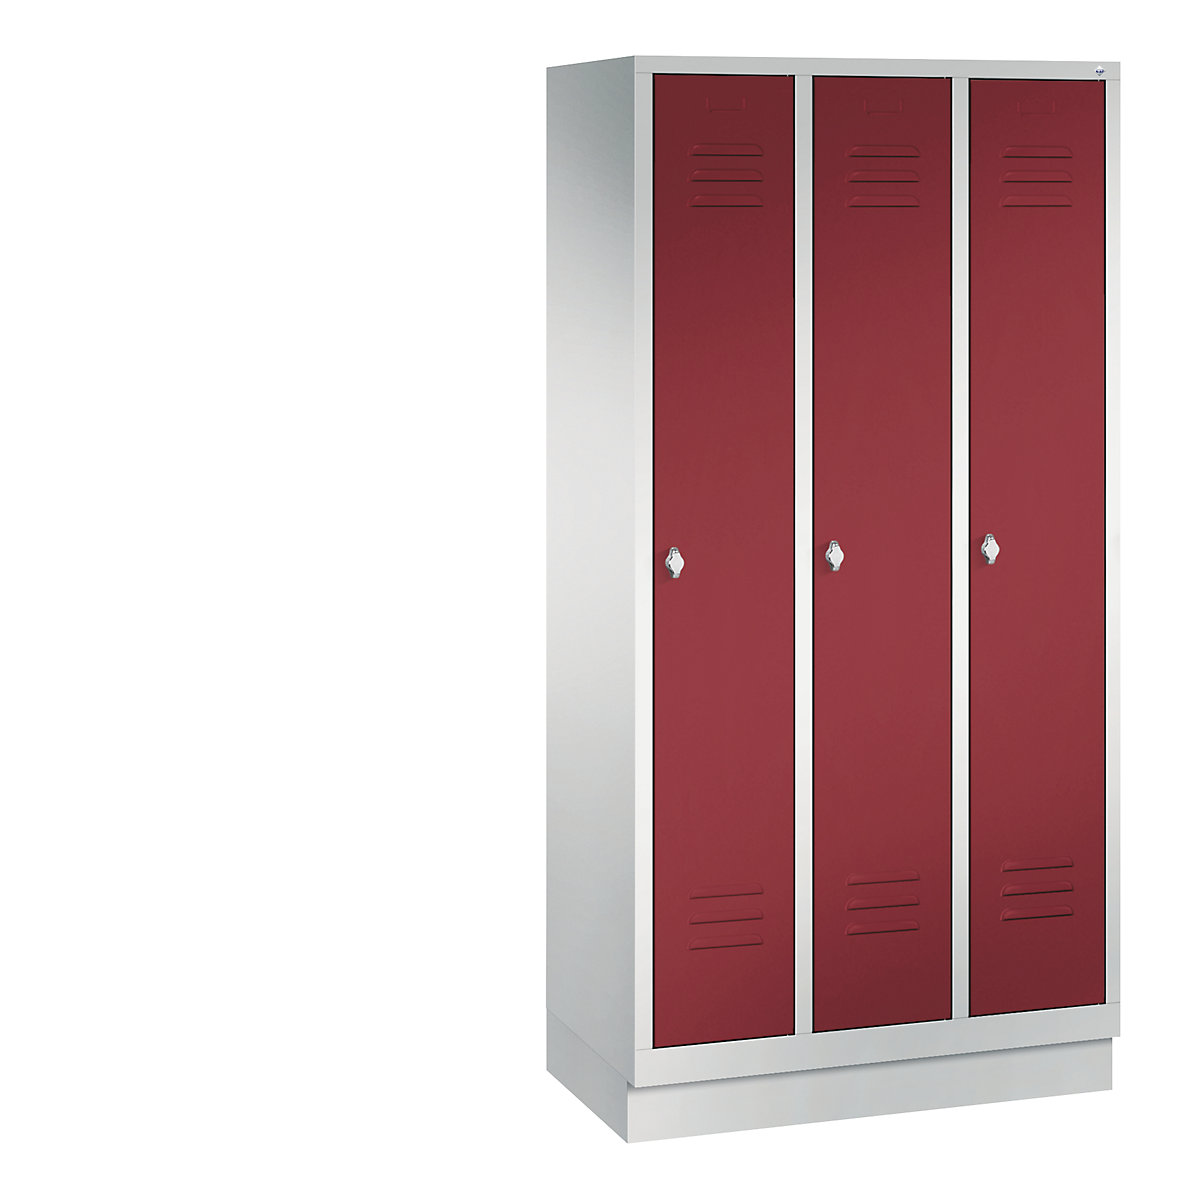 Garderobna omara CLASSIC s podnožjem – C+P, 3 predelki, širina 300 mm/predelek, svetlo sive / rubinasto rdeče barve-8